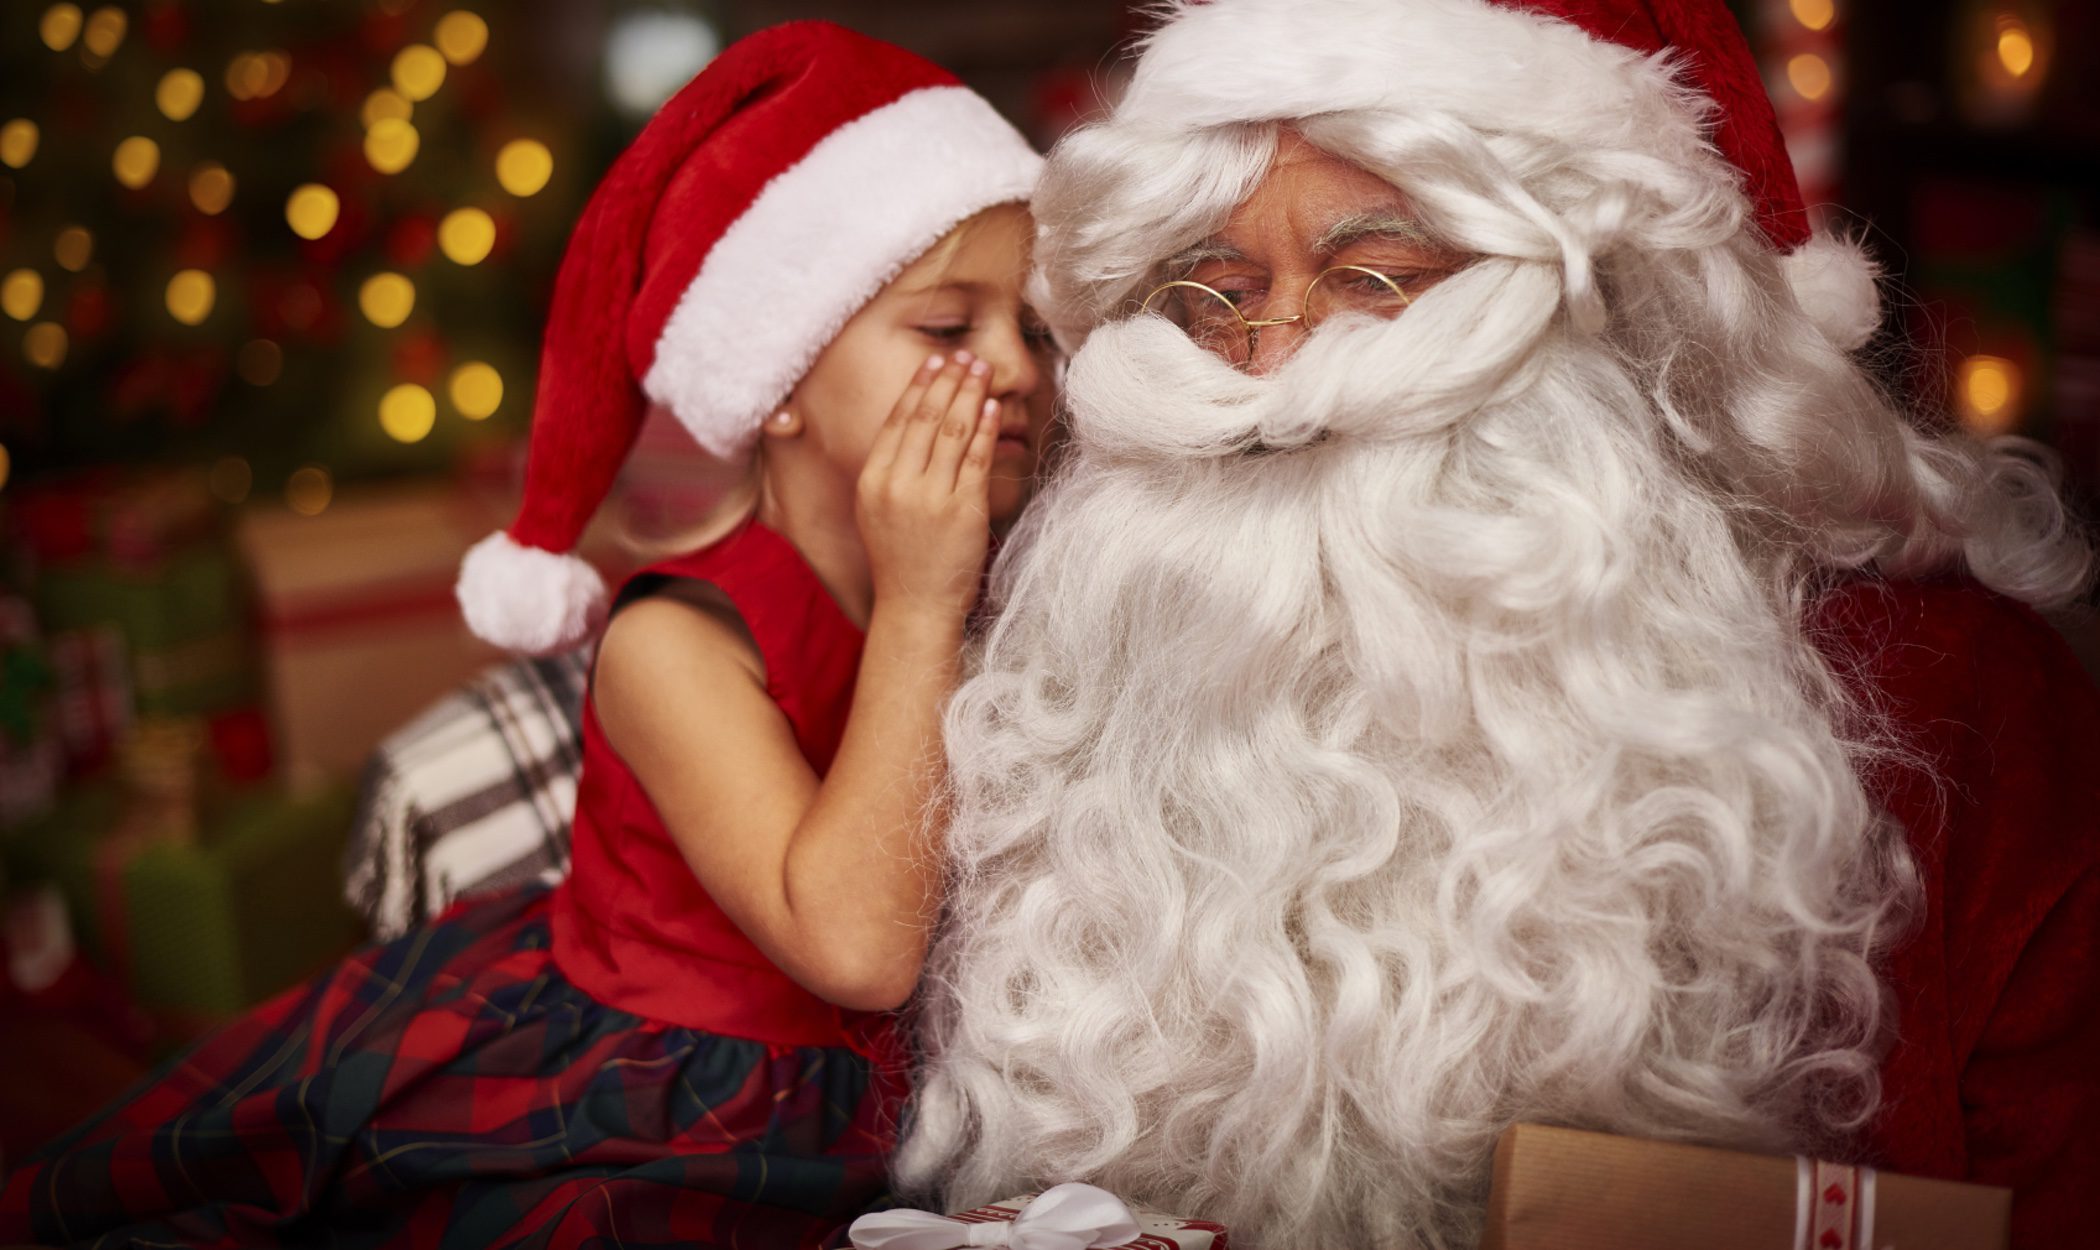 Mi hijo ya no cree en Papá Noel: ¿Qué puedo hacer?